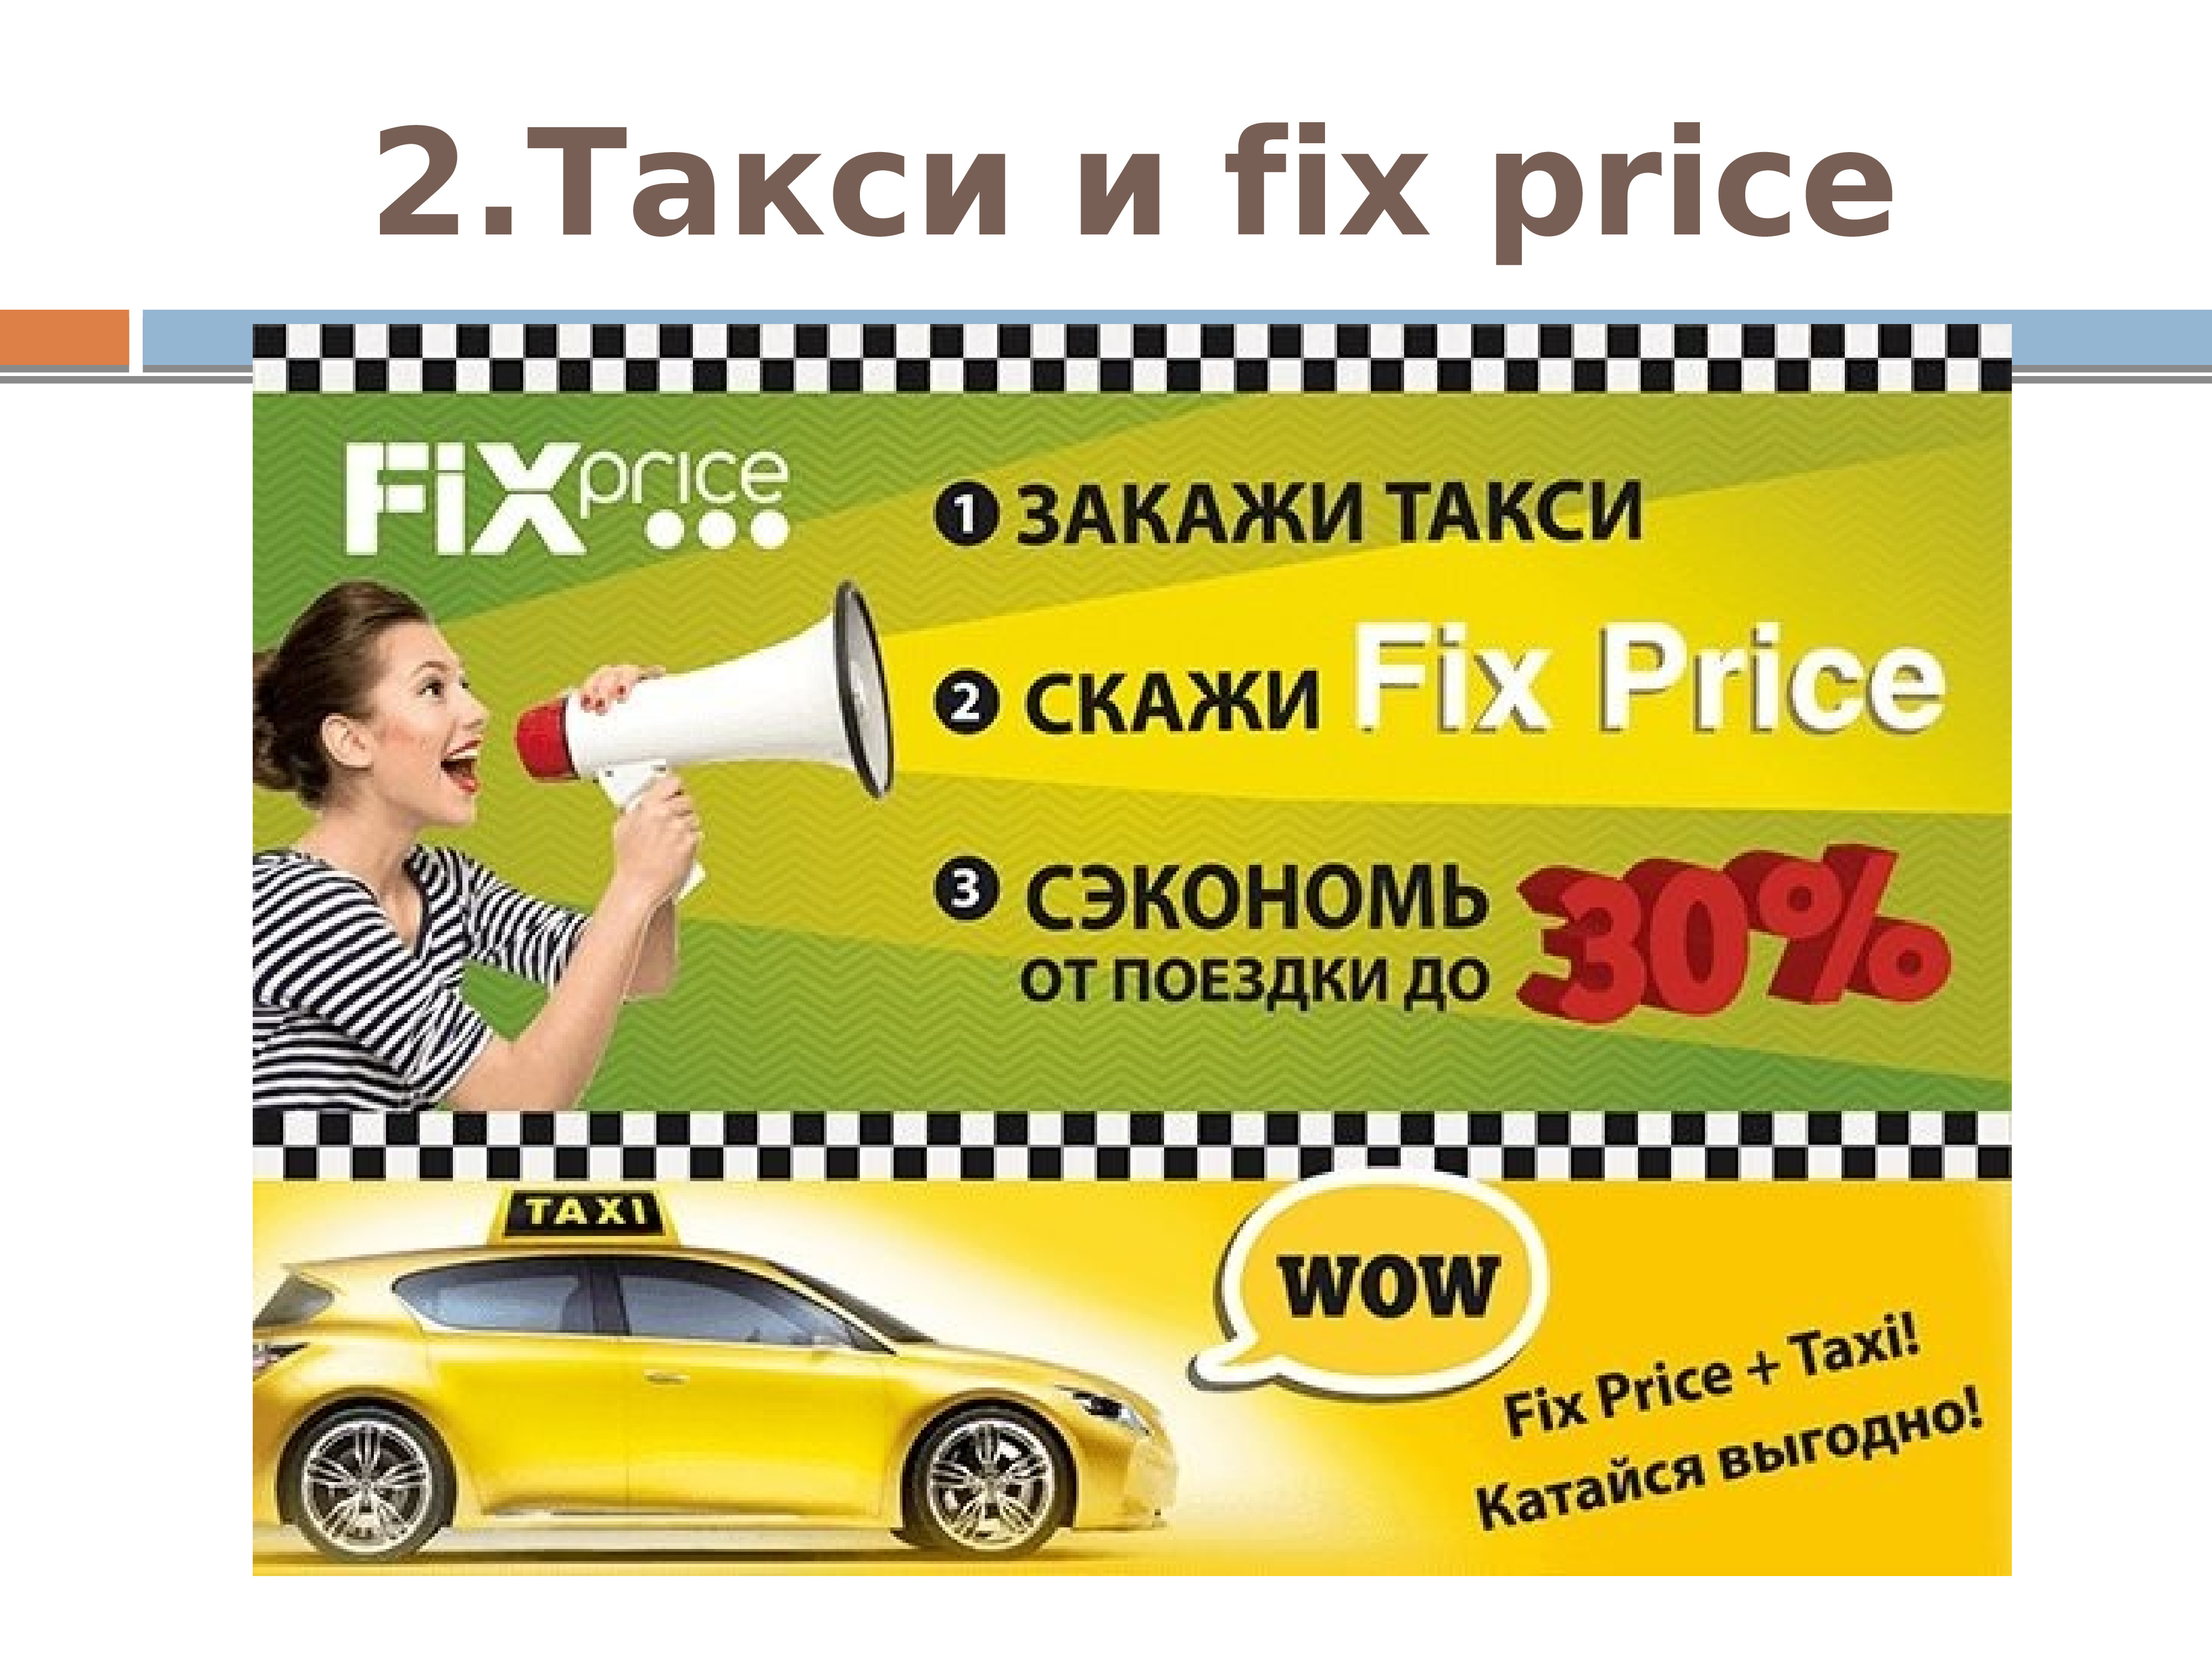 Нужны заказы на такси. Реклама такси. Закажи такси. Акции для таксистов. Баннер такси.